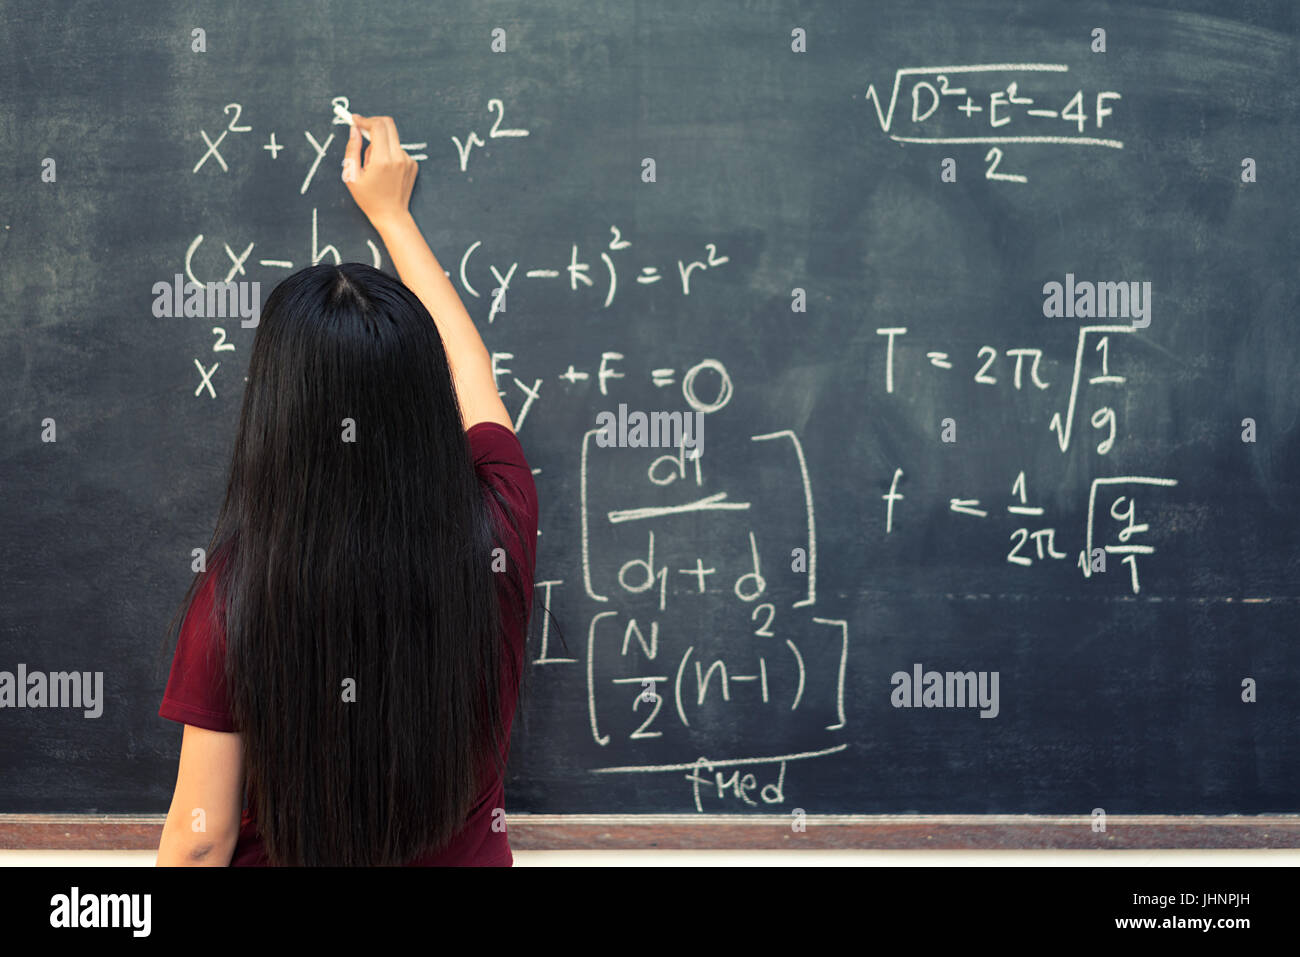 Bella asiatica studente che scrive sulla lavagna con gesso in aula. Foto Stock